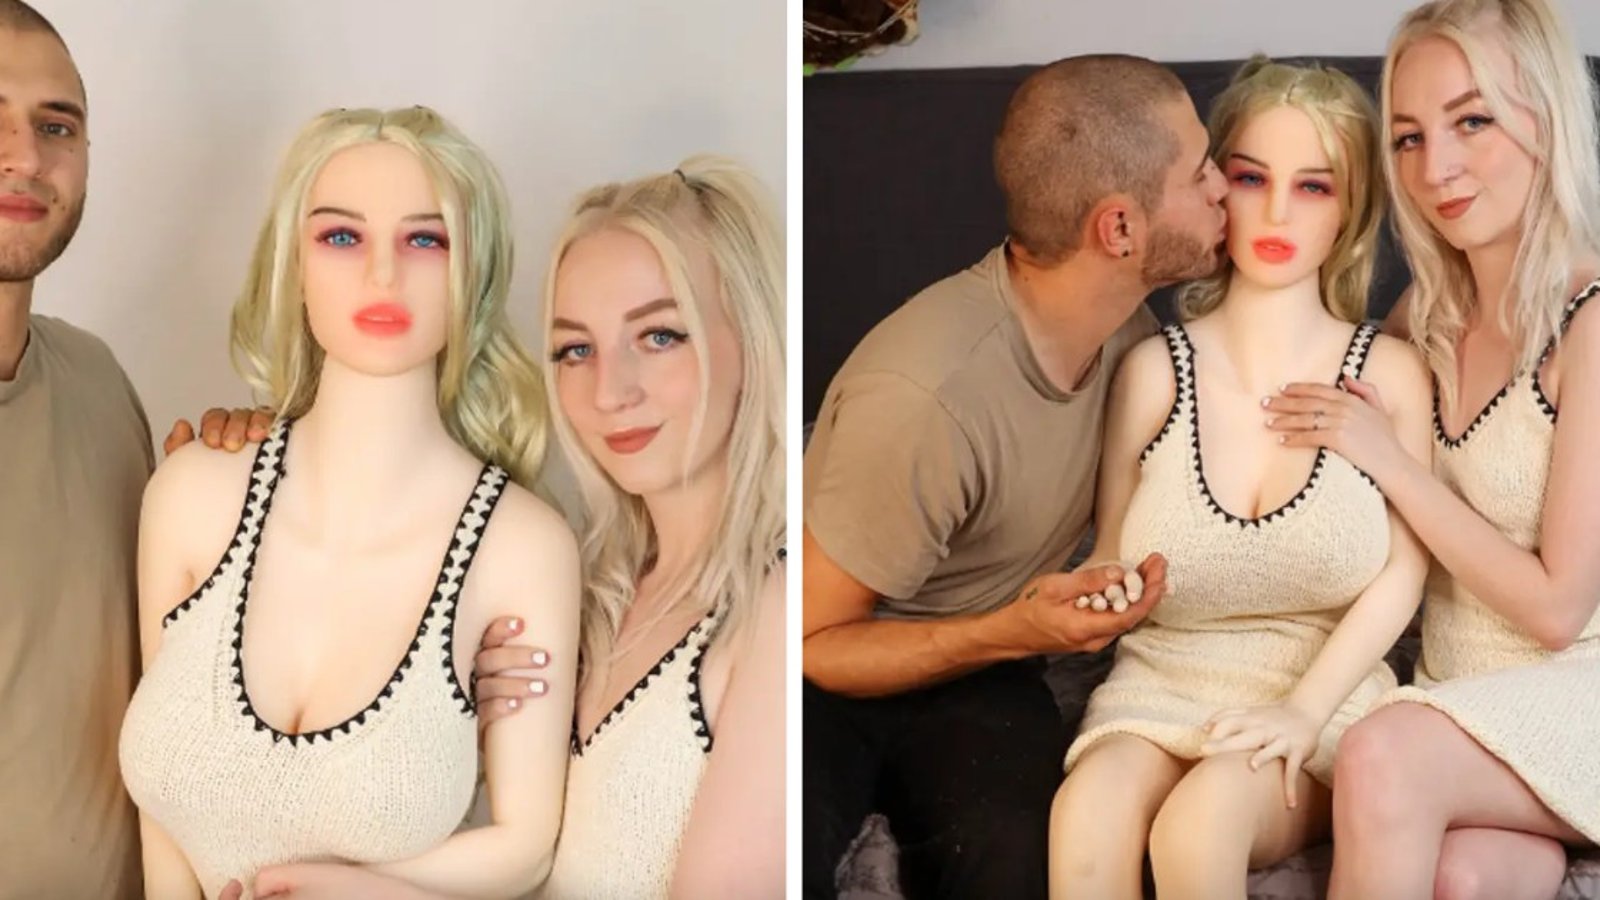 Il s'achète une poupée sexuelle qui ressemble à sa femme et l'utilise quand elle n'est pas d'humeur